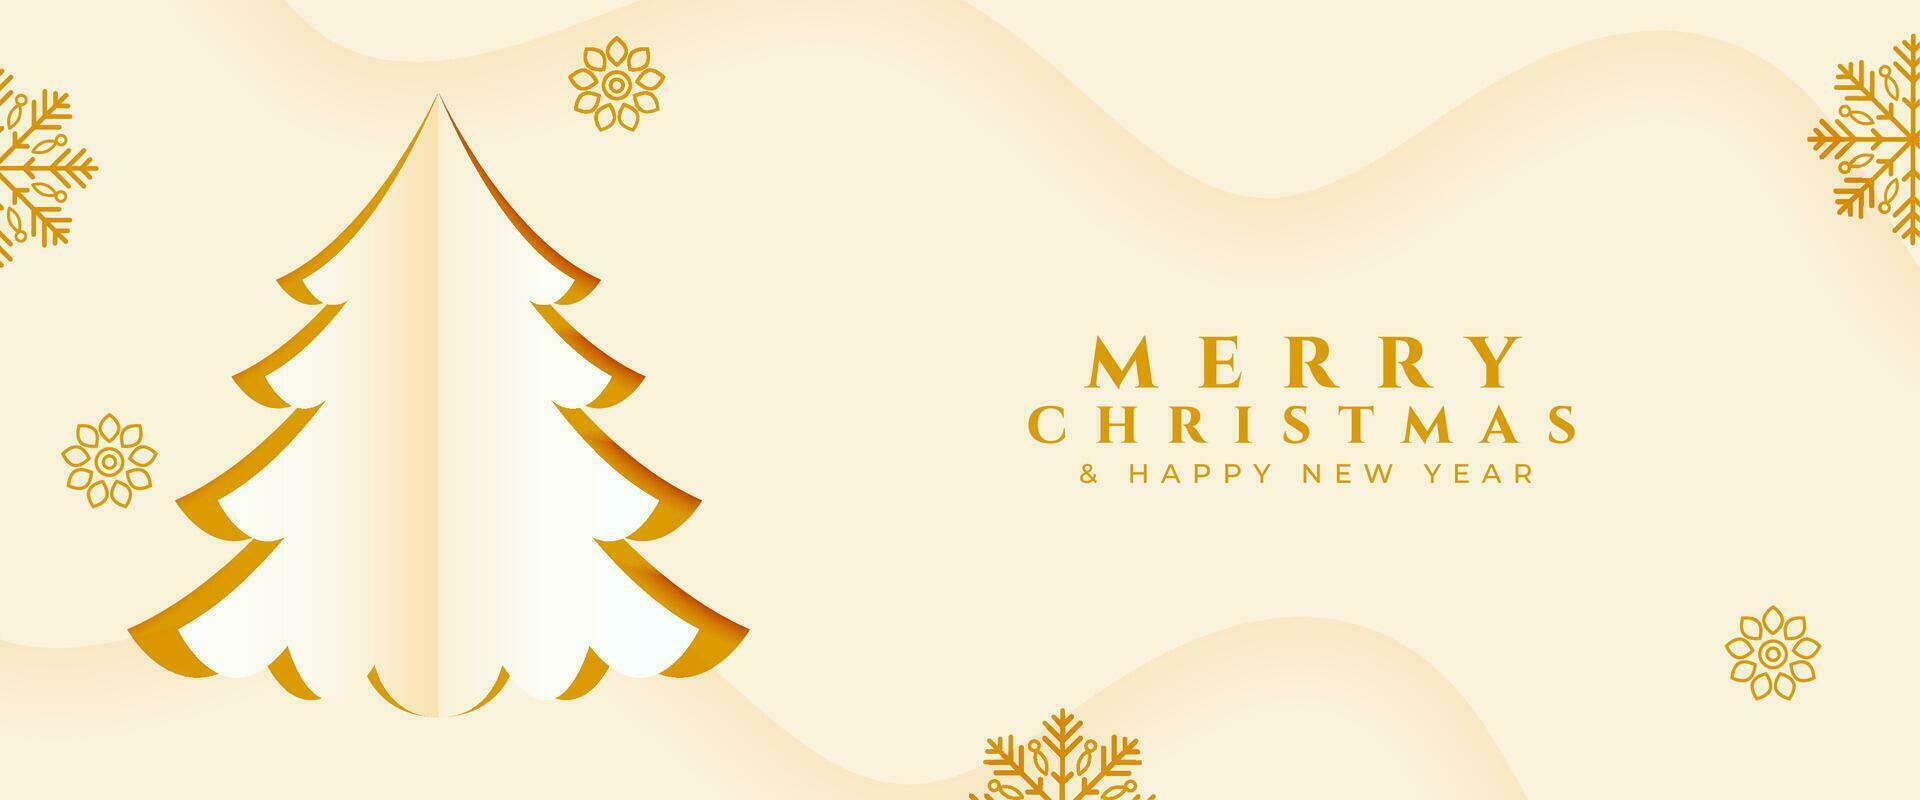 Papier Stil fröhlich Weihnachten festlich Veranstaltung Banner mit Weihnachten Baum vektor